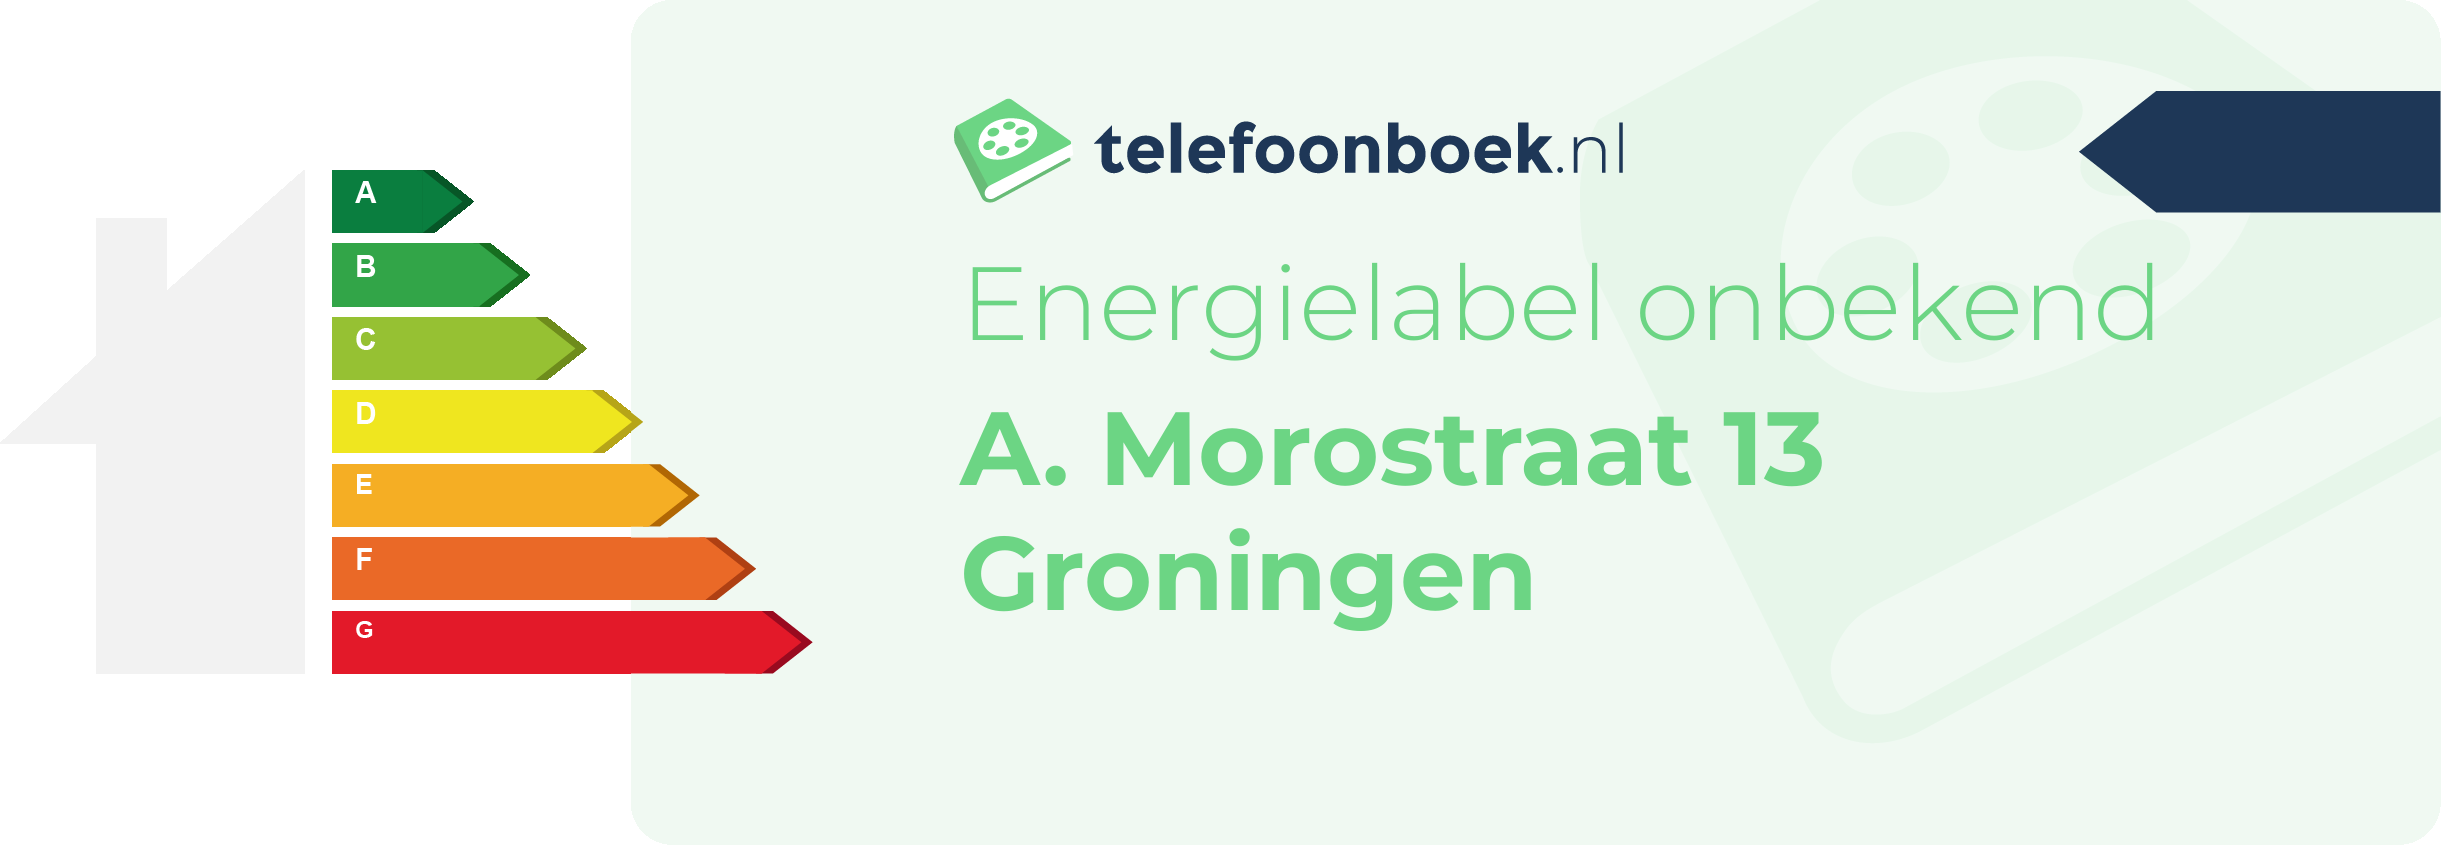 Energielabel A. Morostraat 13 Groningen